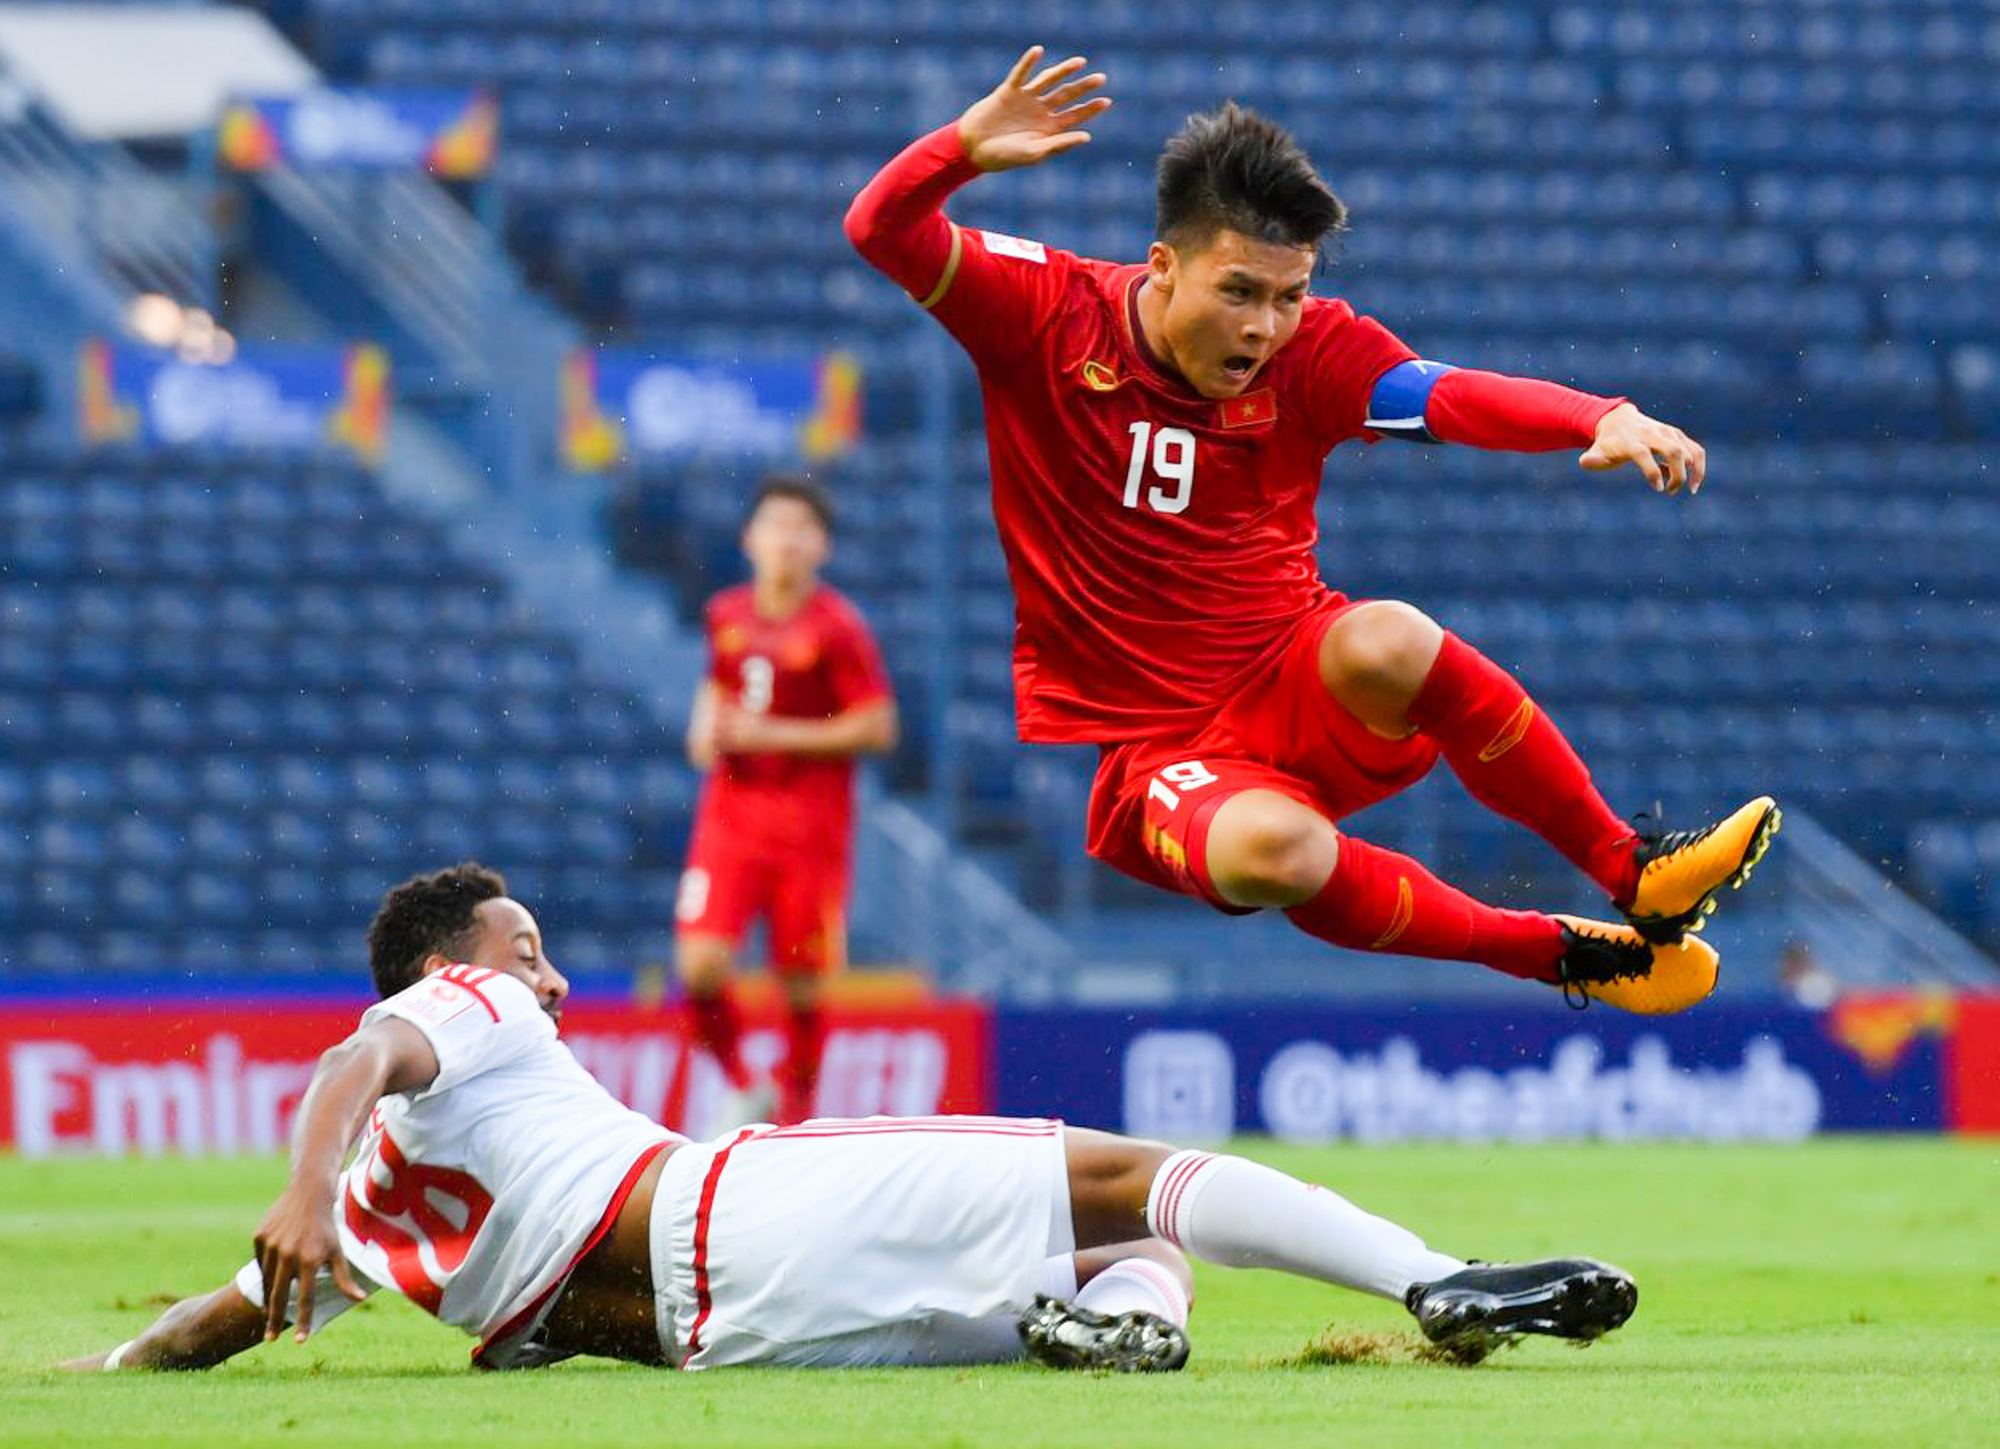 Cận cảnh Quang Hải bị cầu thủ U23 UAE đạp chân nguy hiểm từ phía sau, suýt gặp chấn thương nặng  - Ảnh 6.